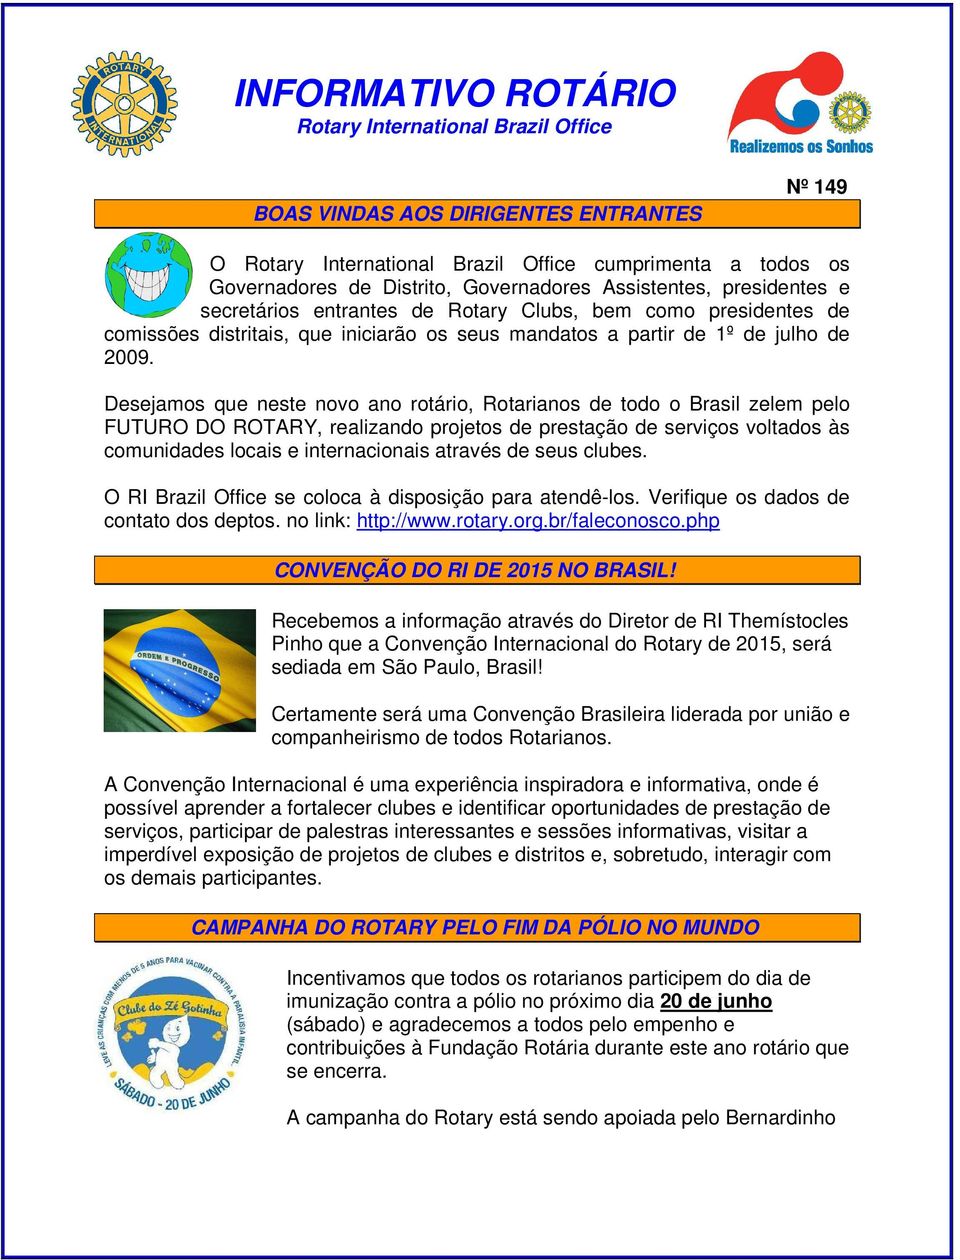 Desejamos que neste novo ano rotário, Rotarianos de todo o Brasil zelem pelo FUTURO DO ROTARY, realizando projetos de prestação de serviços voltados às comunidades locais e internacionais através de